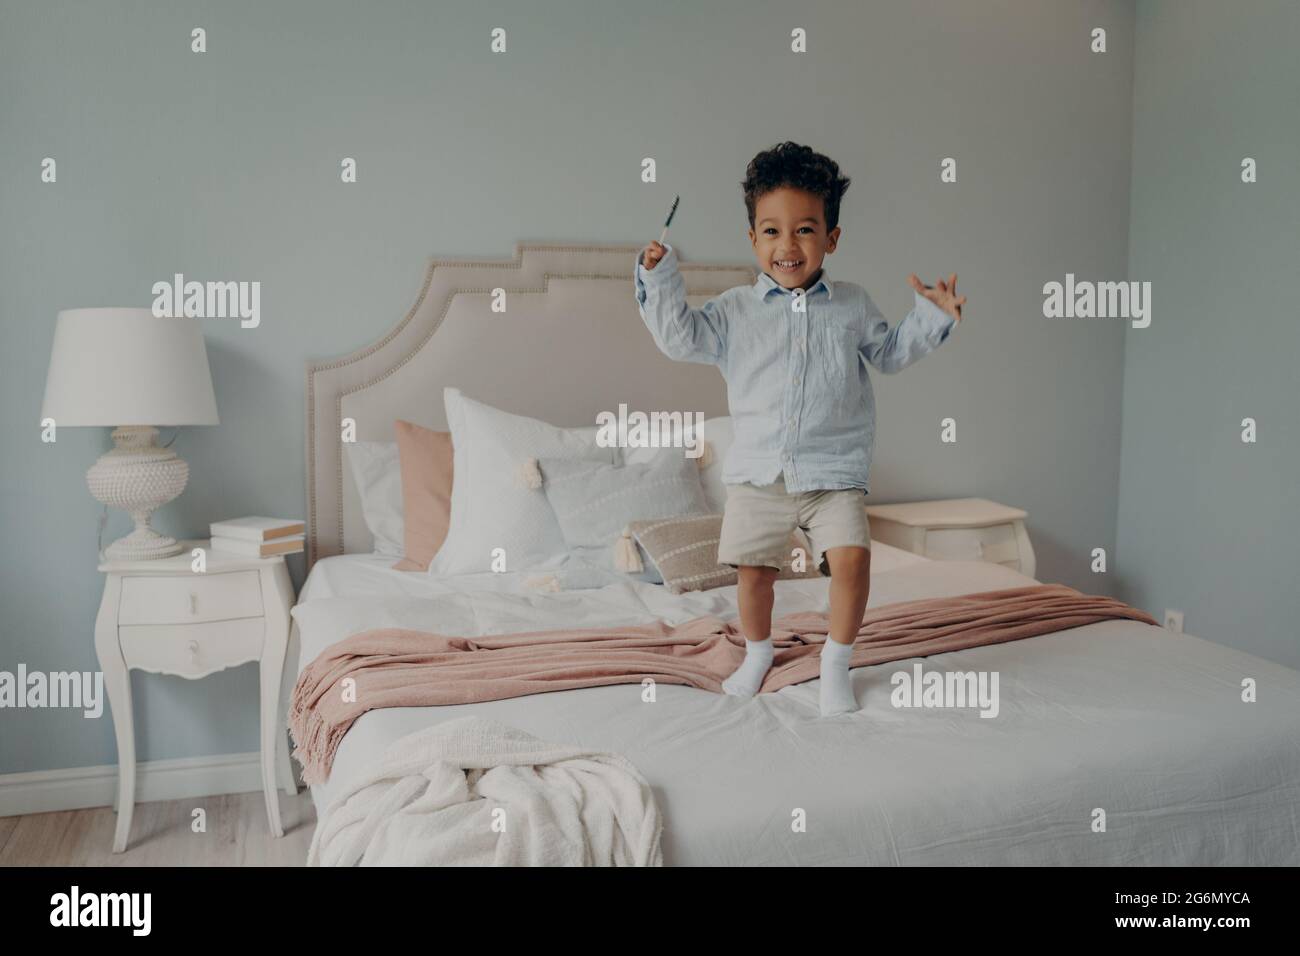 Fröhliches kleines afro amerikanisches Kind, das zu Hause auf dem Bett springt und lächelt Stockfoto